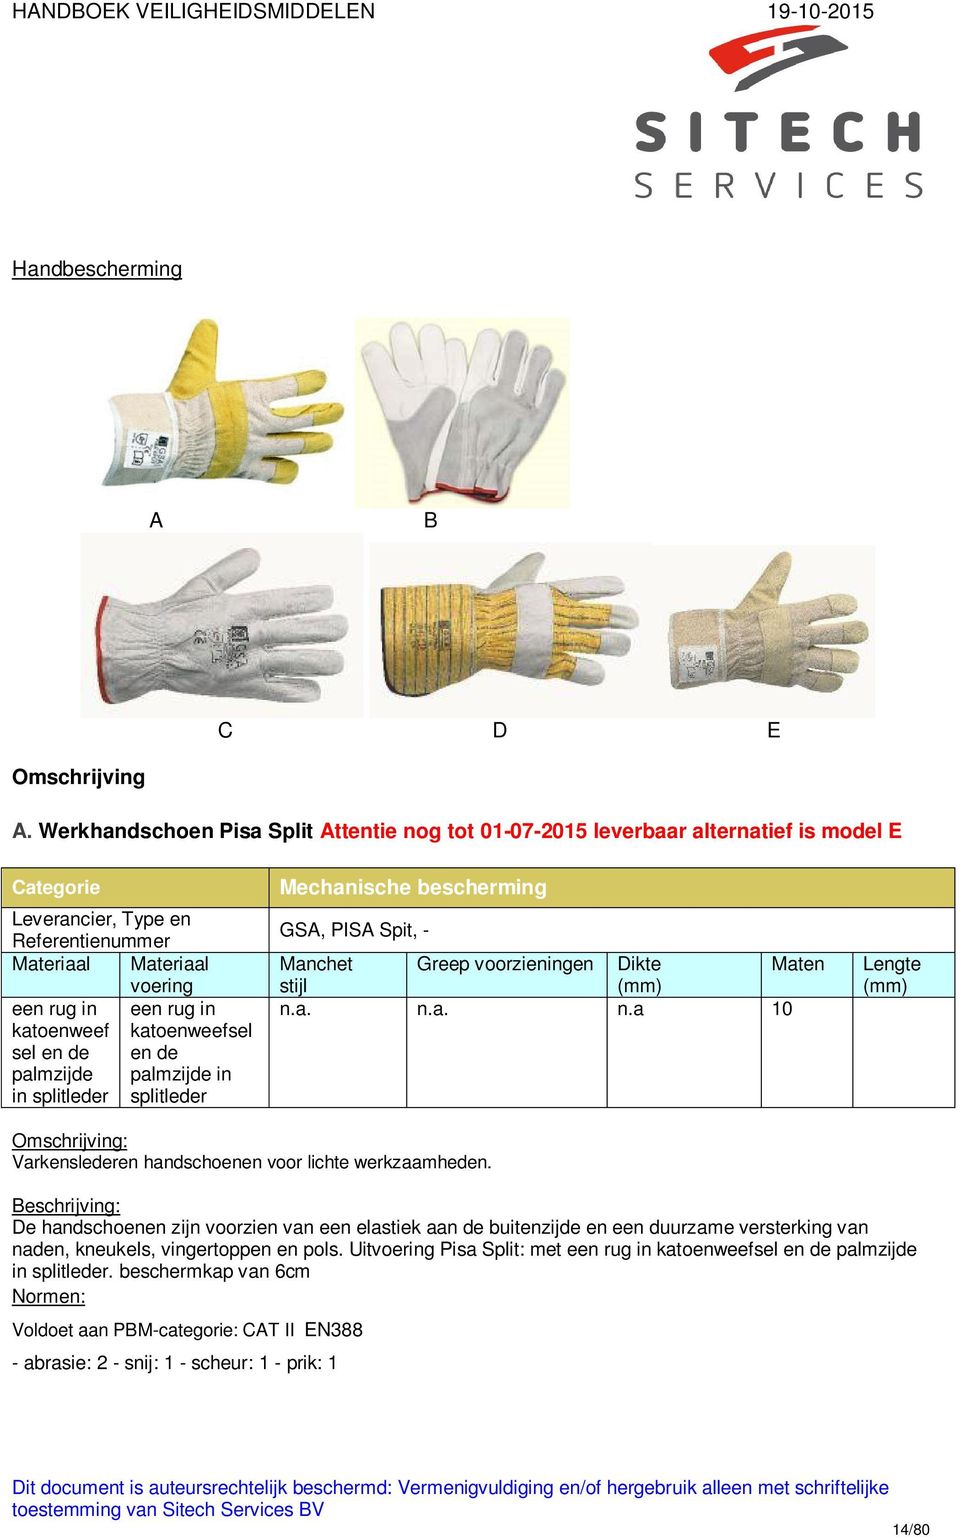 palmzijde palmzijde in in splitleder splitleder Mechanische bescherming GSA, PISA Spit, - Greep voorzieningen Dikte Maten n.a. n.a. n.a 10 Lengte Varkenslederen handschoenen voor lichte werkzaamheden.